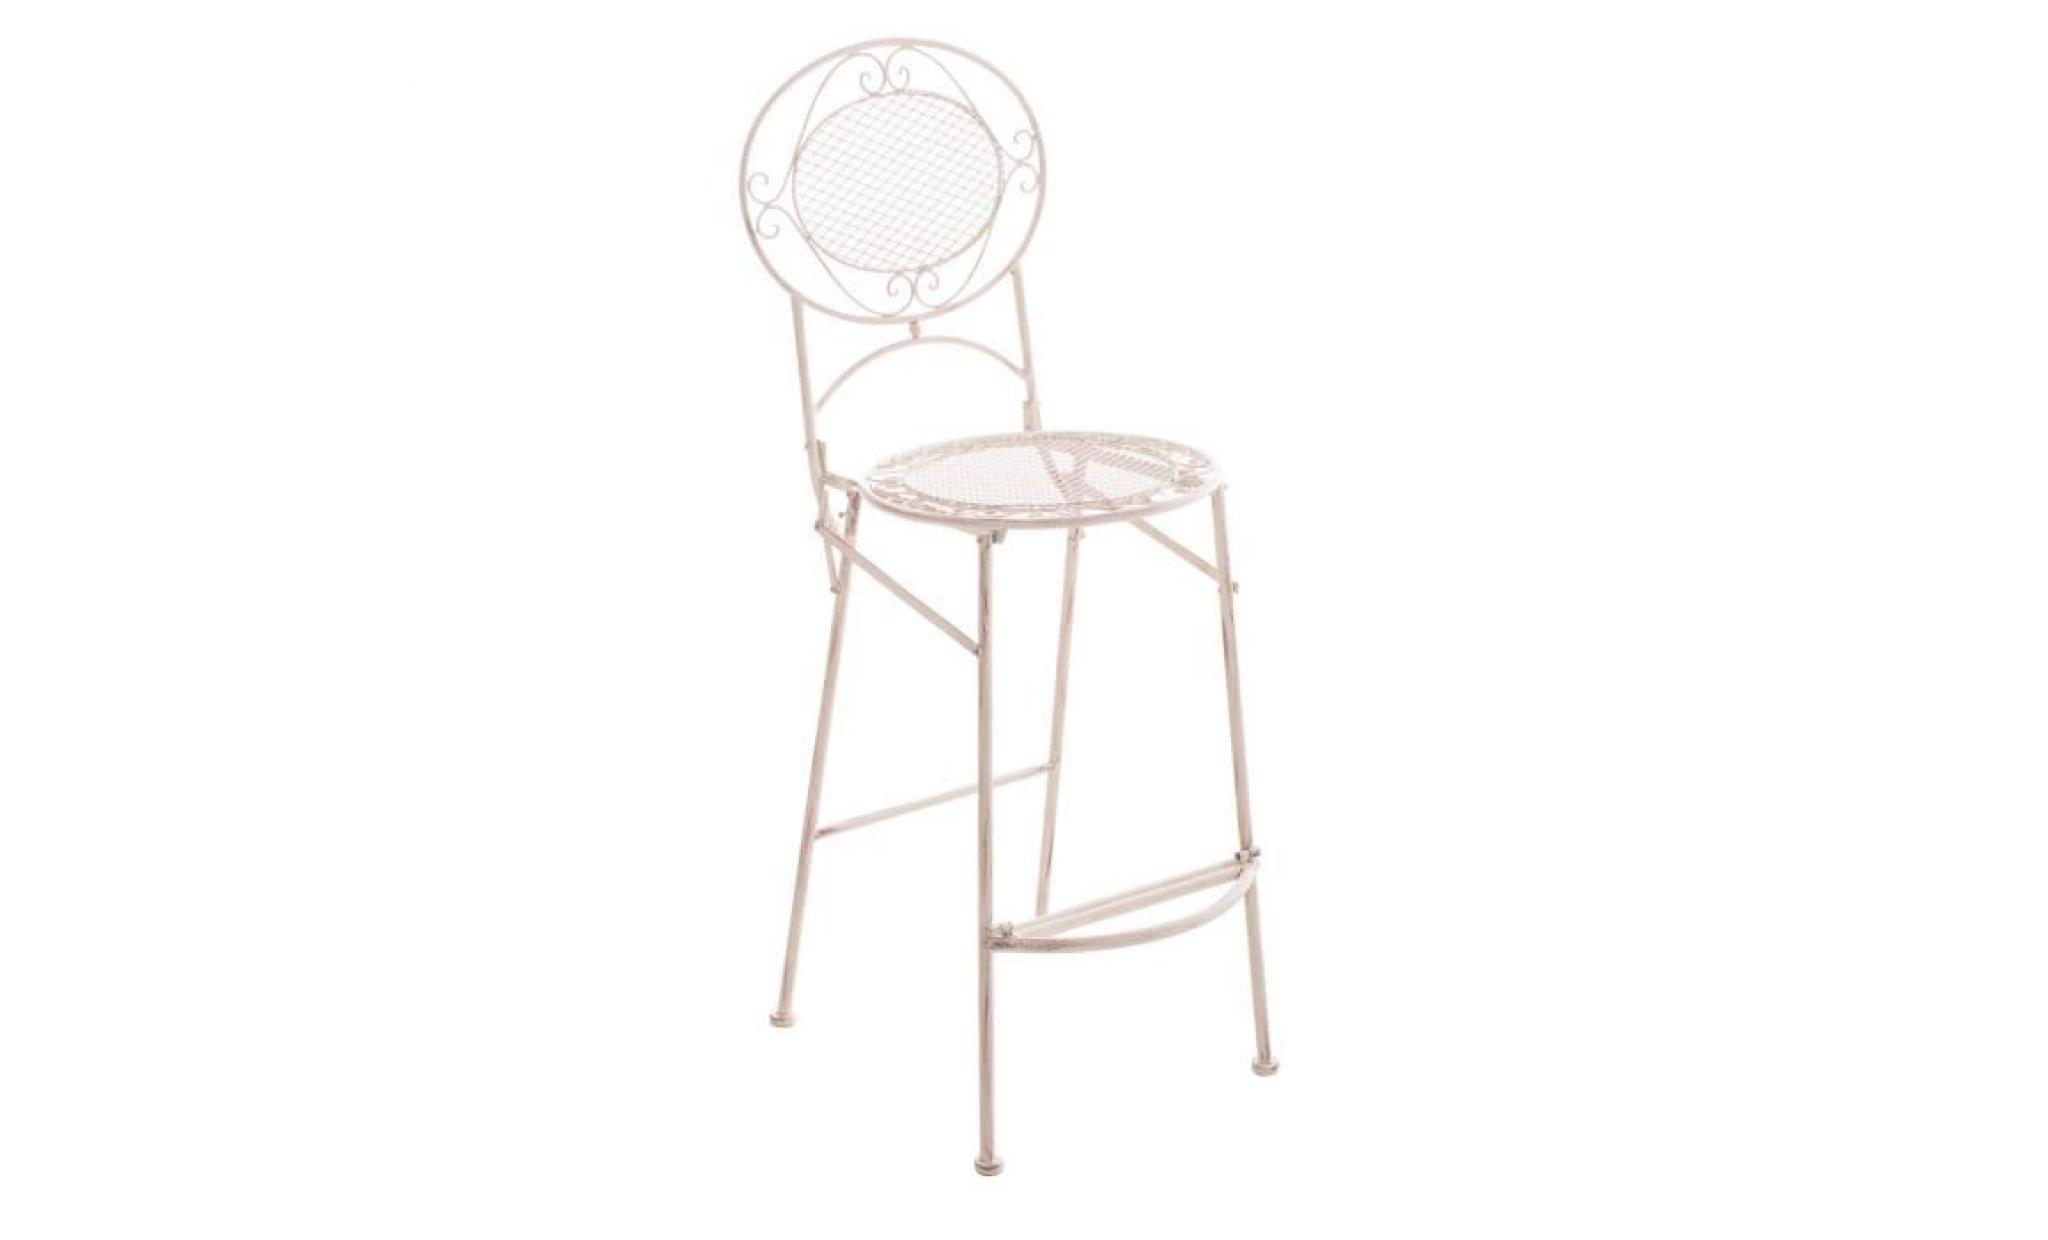 clp chaise /tabouret de bar de jardin nostalgique begona au design romantique, fer forgé fait à la main, pliable, plusieurs coule...